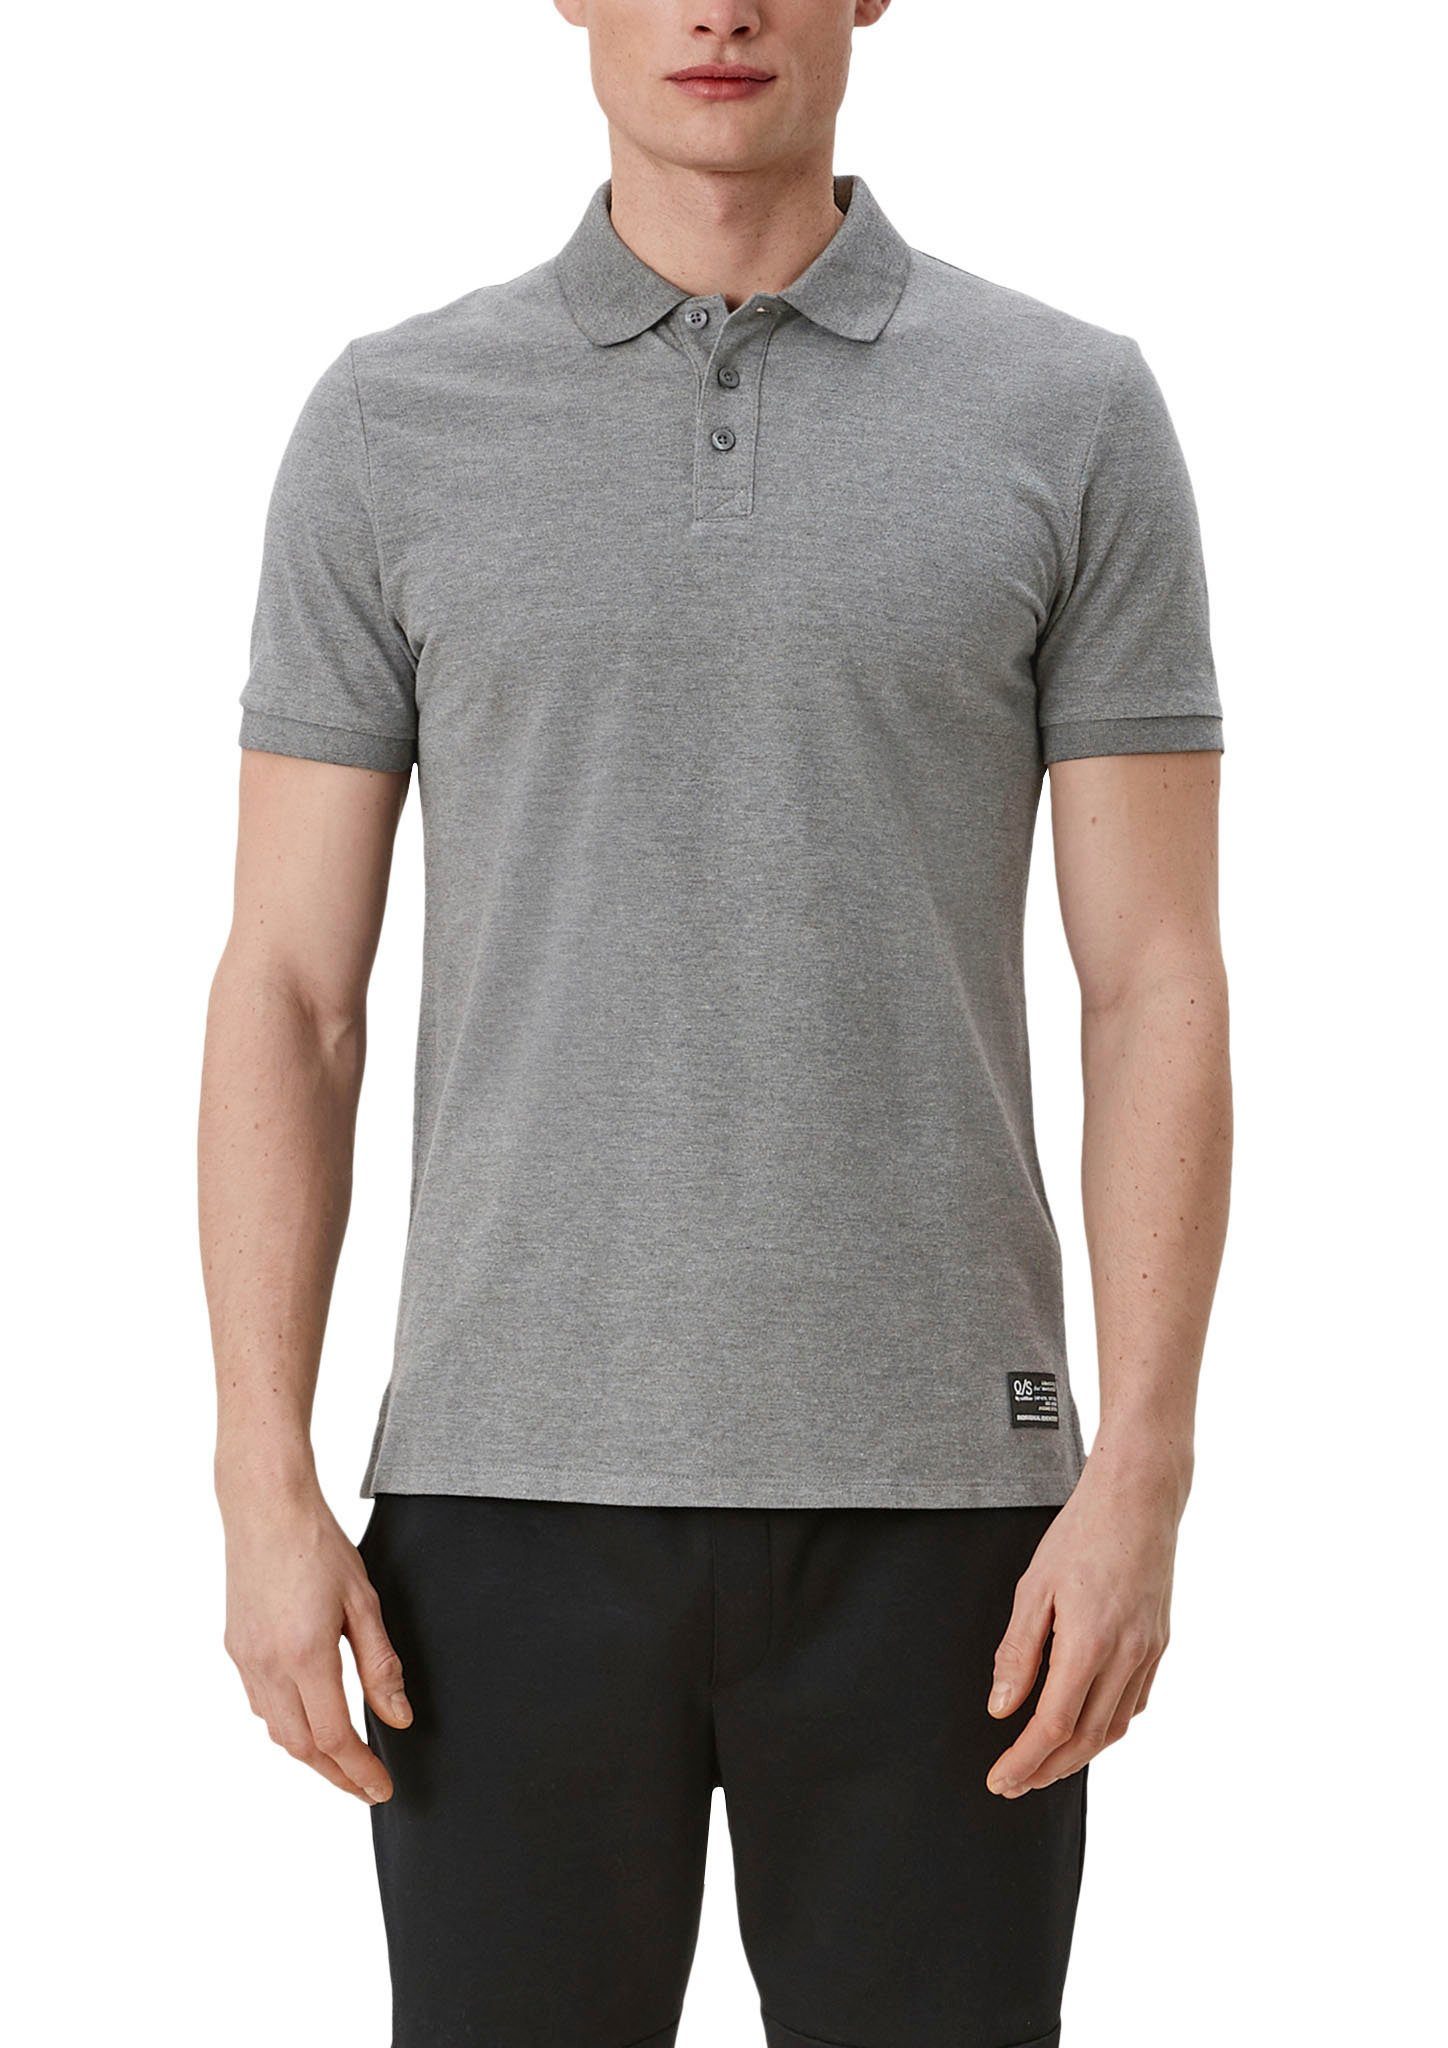 QS Poloshirt Einschnitte an grey/black den Seiten